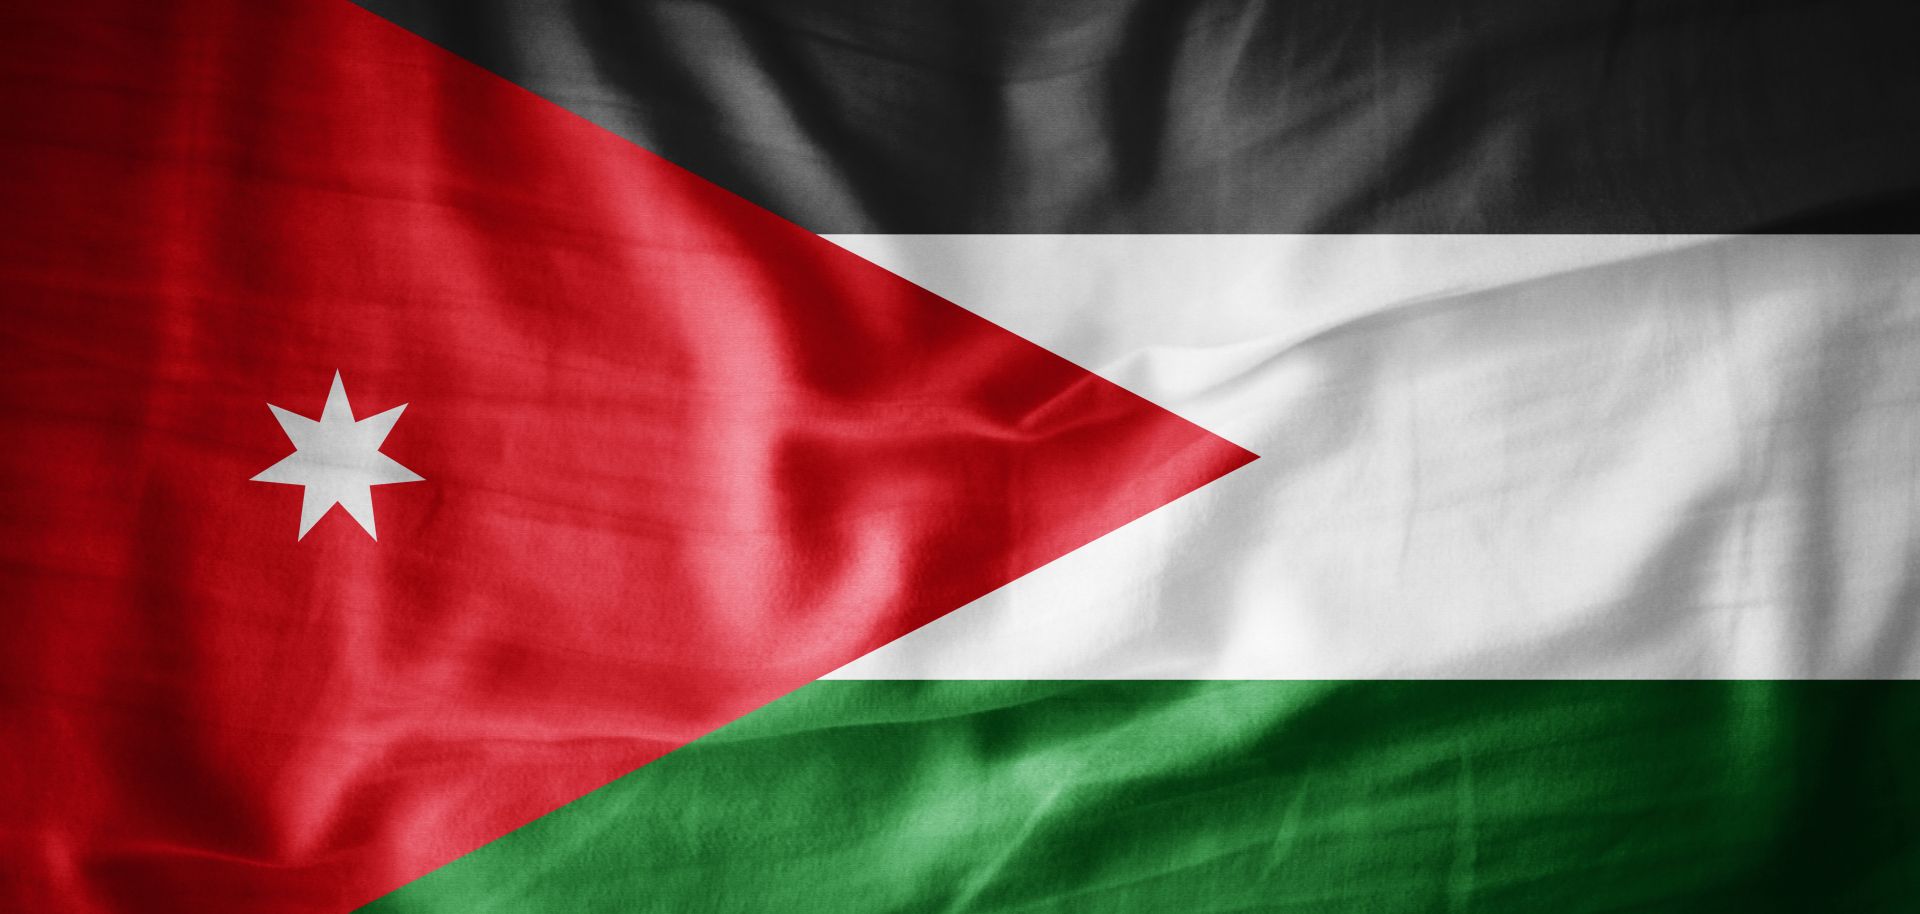 An image of the Jordanian flag.